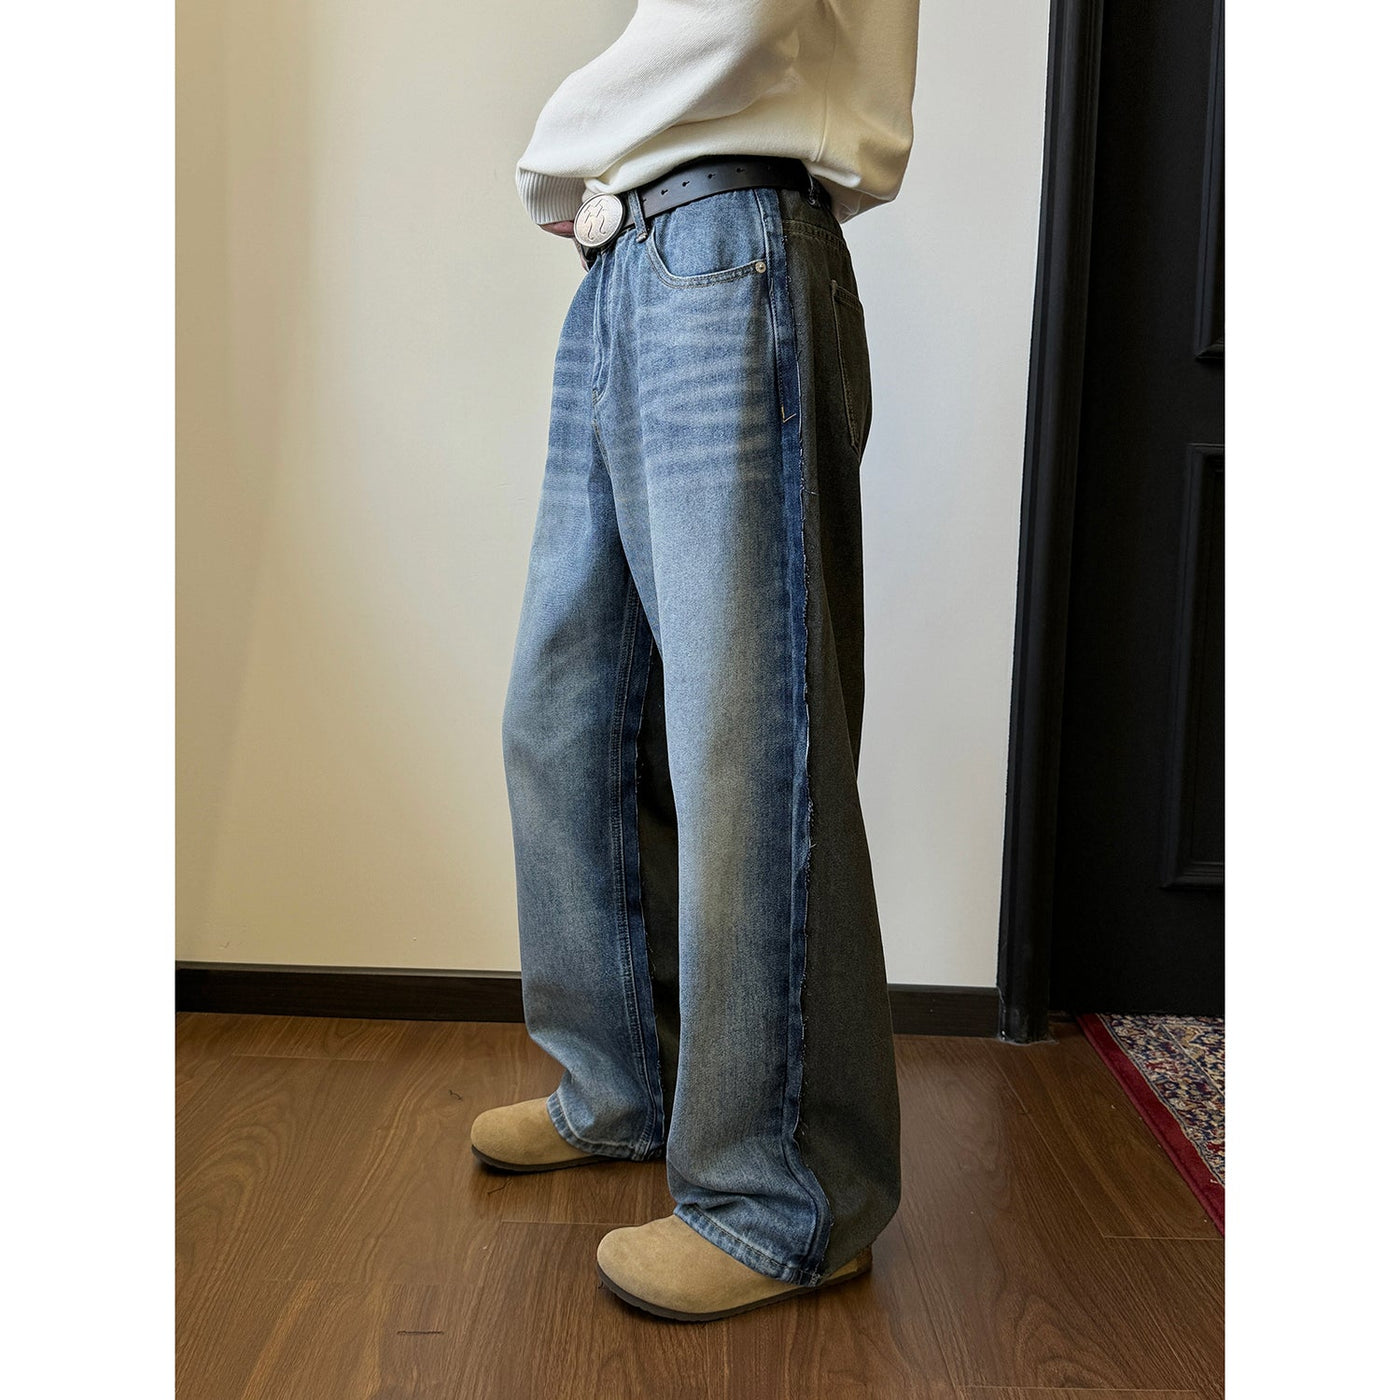 Nine Color Block Paris Style Jeans-korean-fashion-Jeans-Nine's Closet-OH Garments